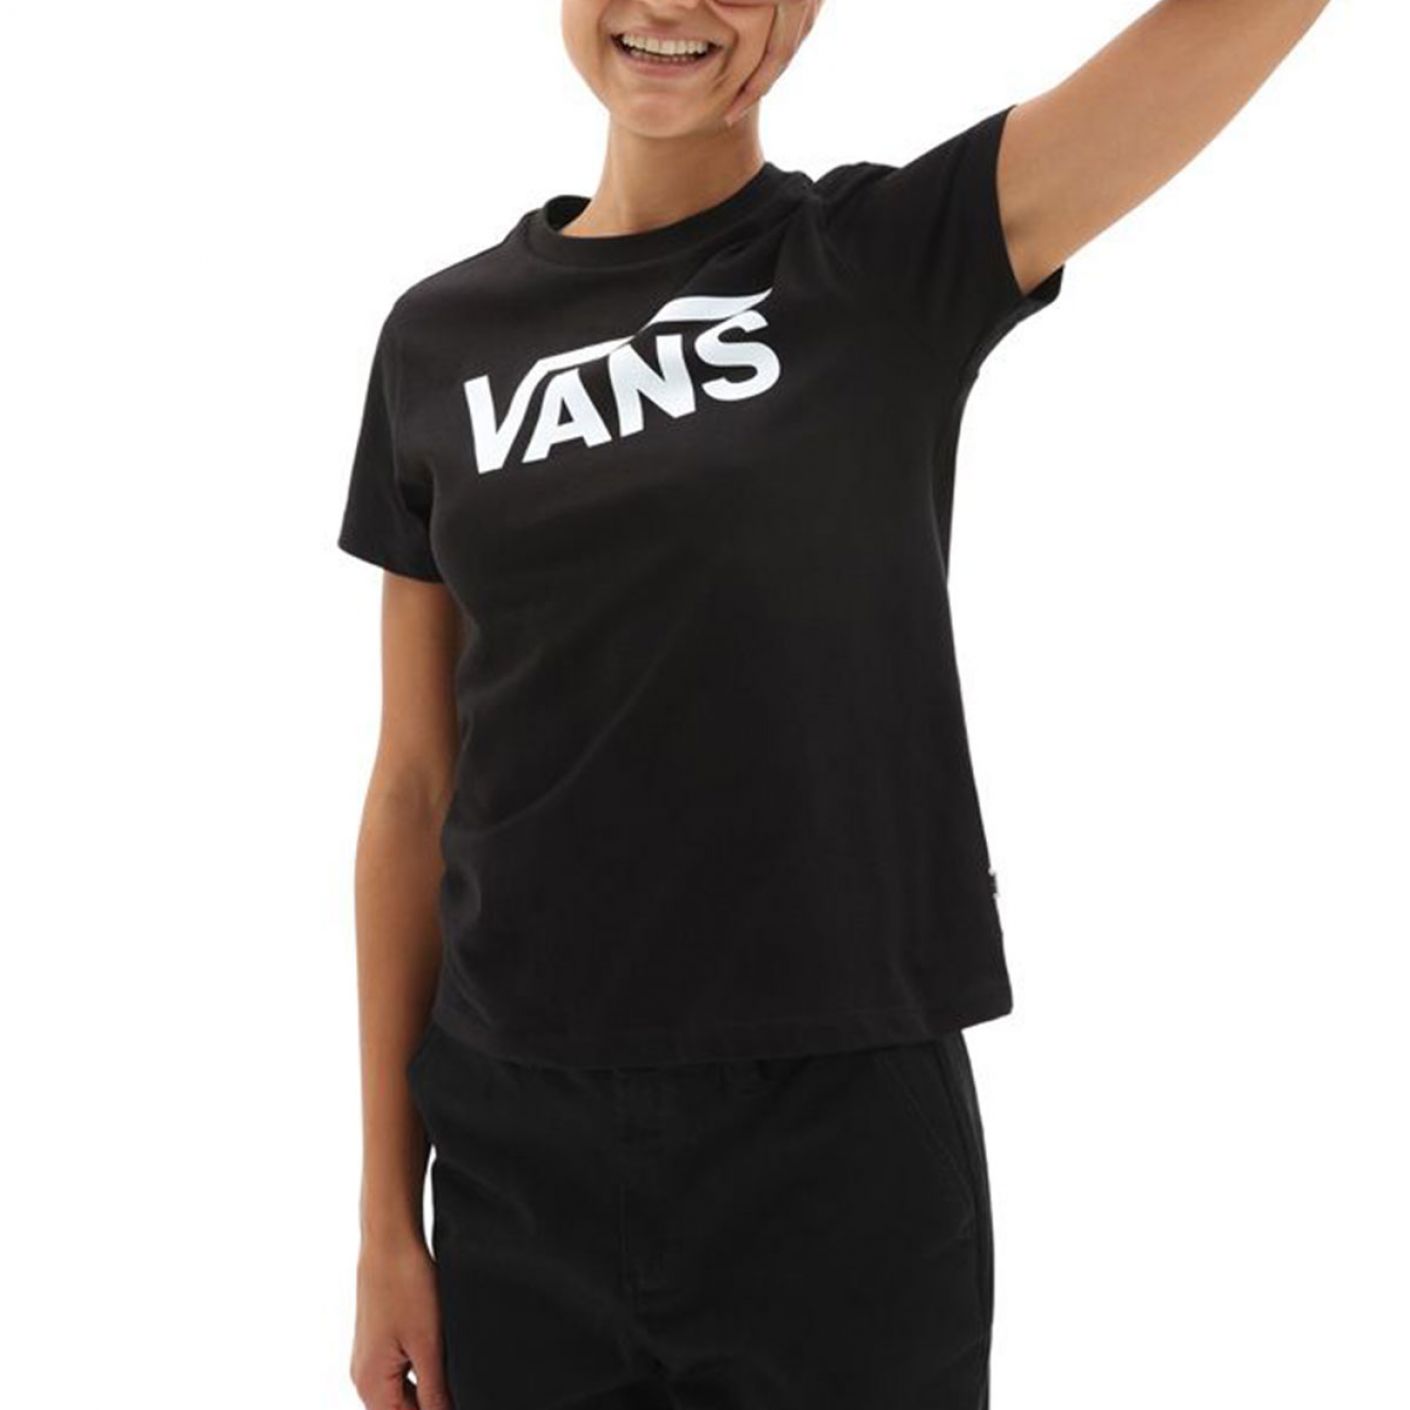 Vans Women's Flying V Crew Tee Black T-shirt